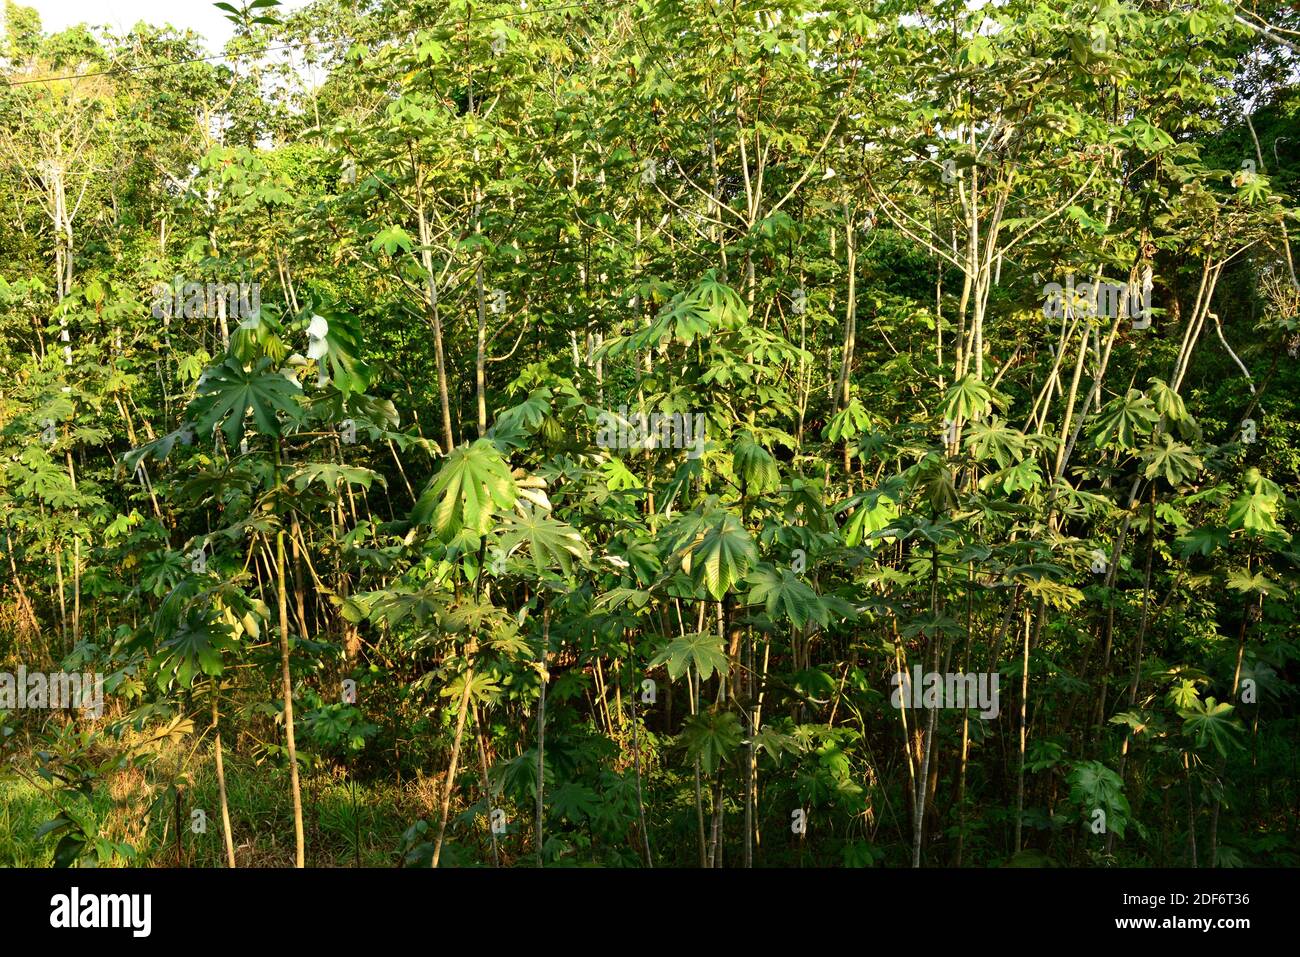 Snakewood (Cecropia peltata) ist ein immergrüner invasiver Baum, der im tropischen Amerika beheimatet ist. Dieses Foto wurde in der Nähe von Manaus, Brasilien, aufgenommen. Stockfoto